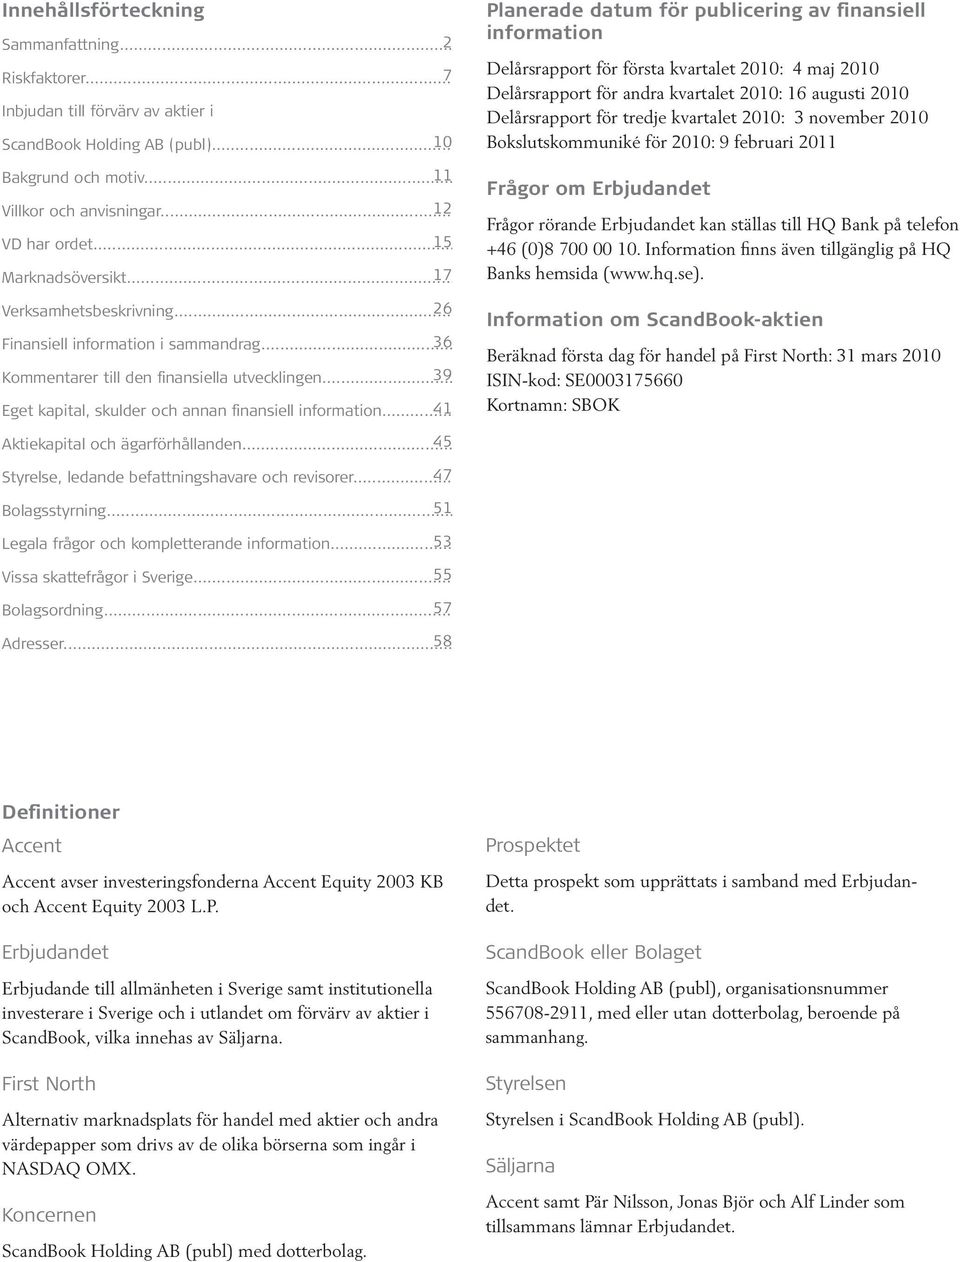 2010 ScandBook Holding AB (publ)... 10 Bokslutskommuniké för 2010: 9 februari 2011 Bakgrund och motiv... 11 Frågor om Erbjudandet Villkor och anvisningar.